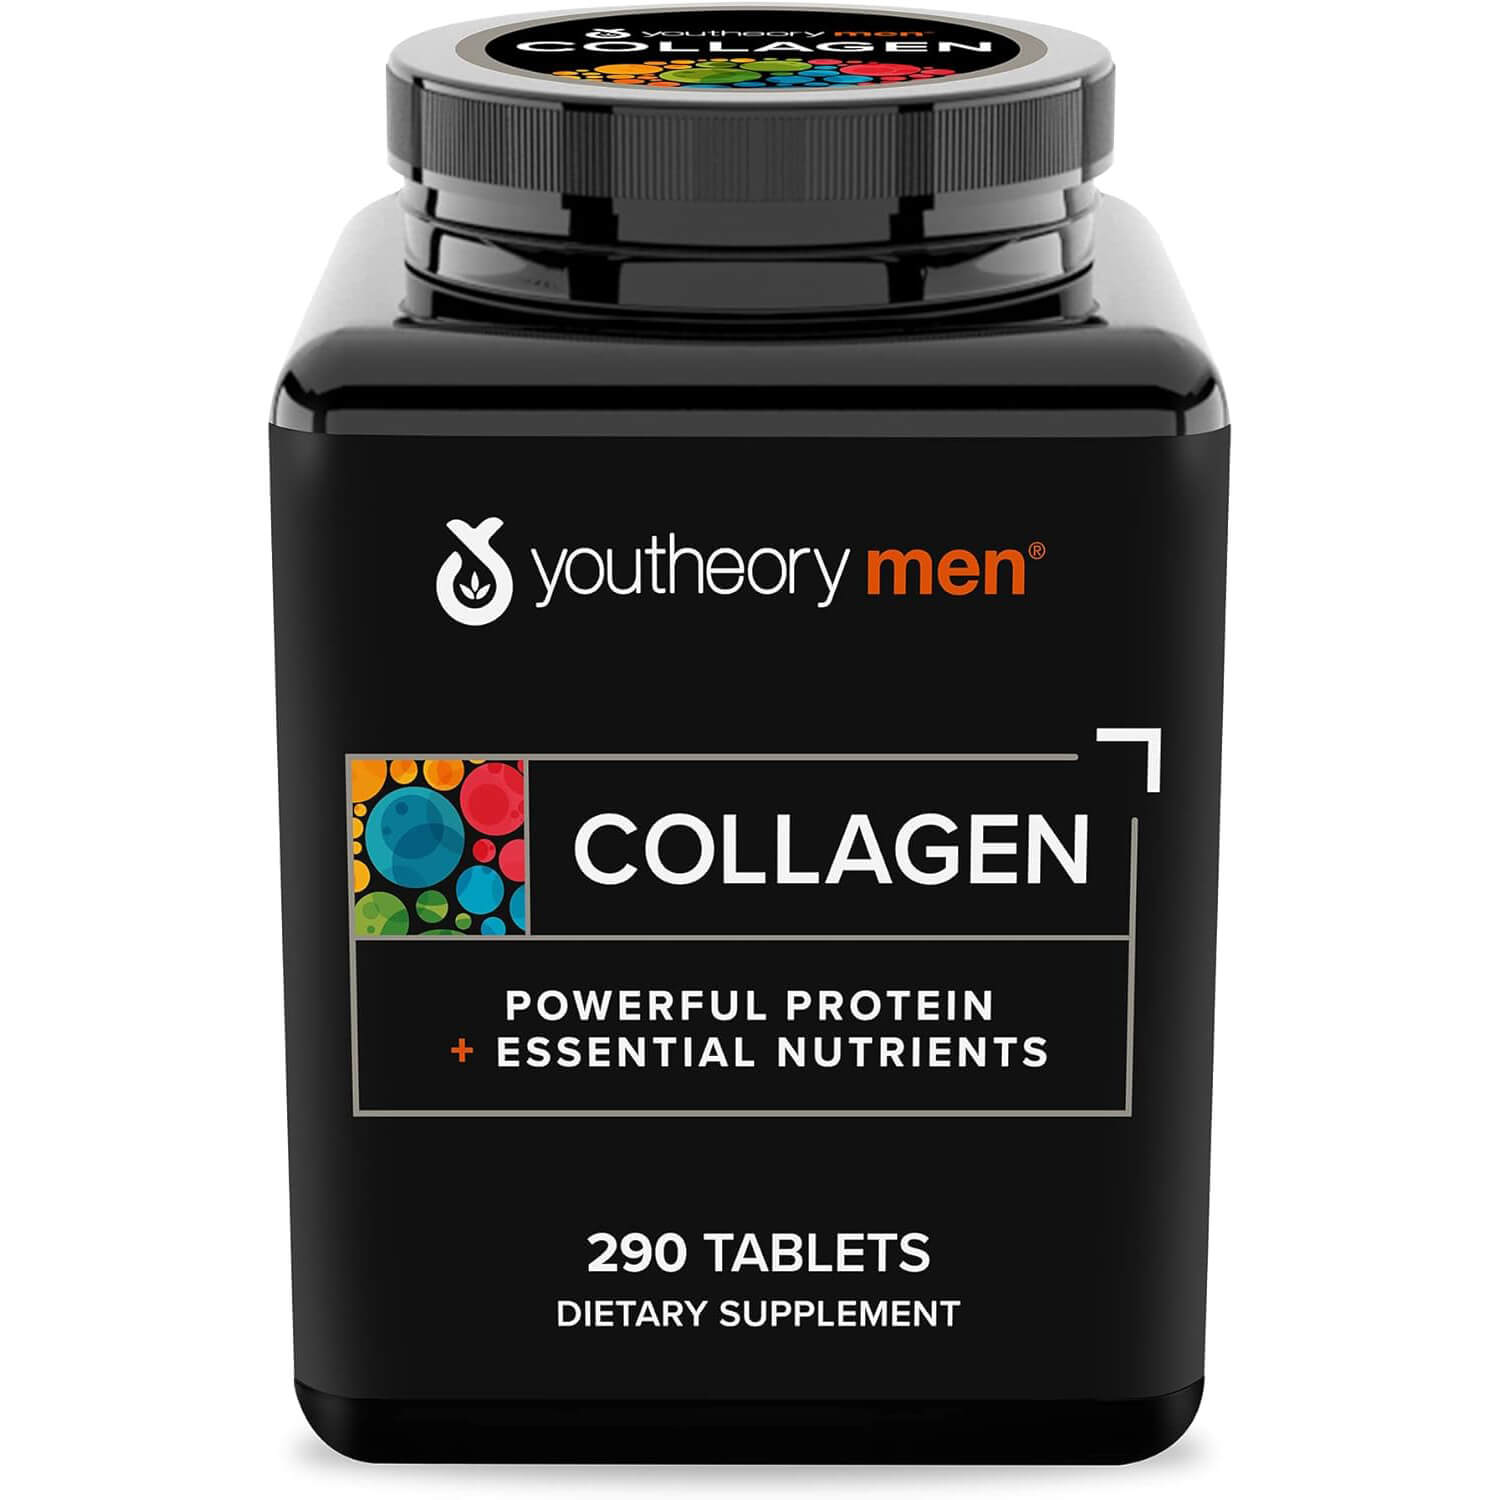 Комплекс коллагена с протеином Youtheory + Nutrients, для мужчин, 290 капсул